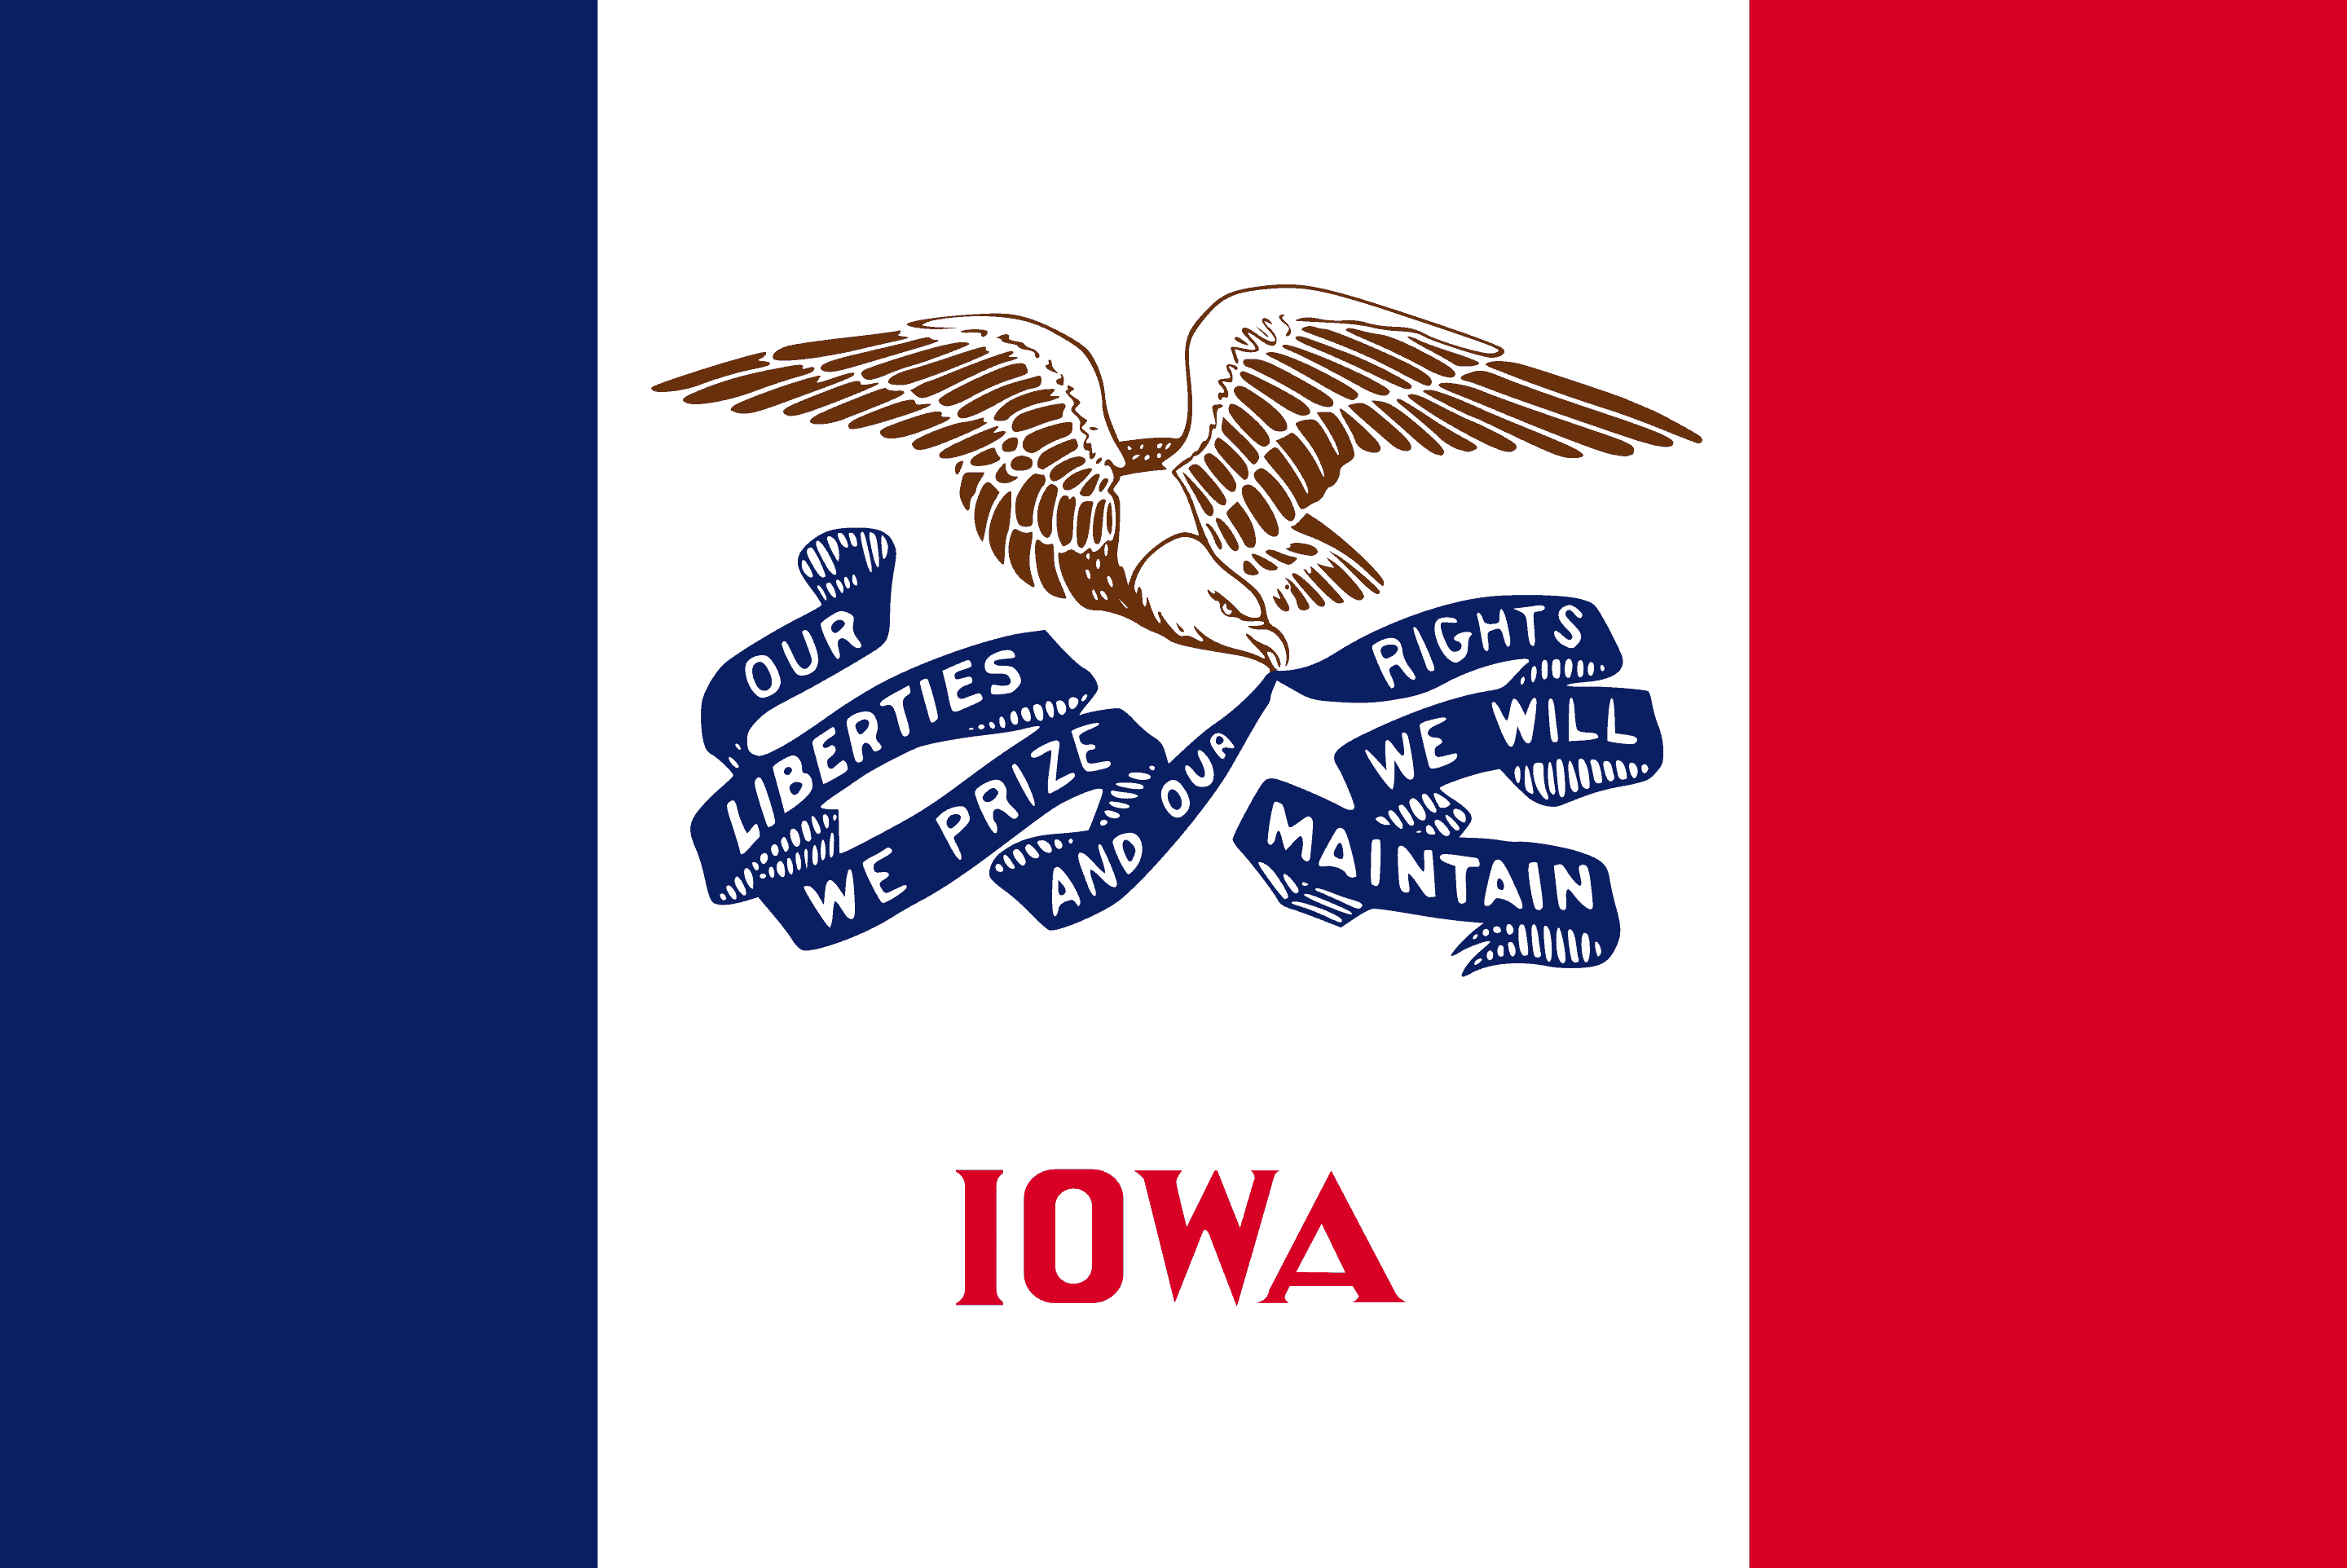 Drone Laws in Iowa